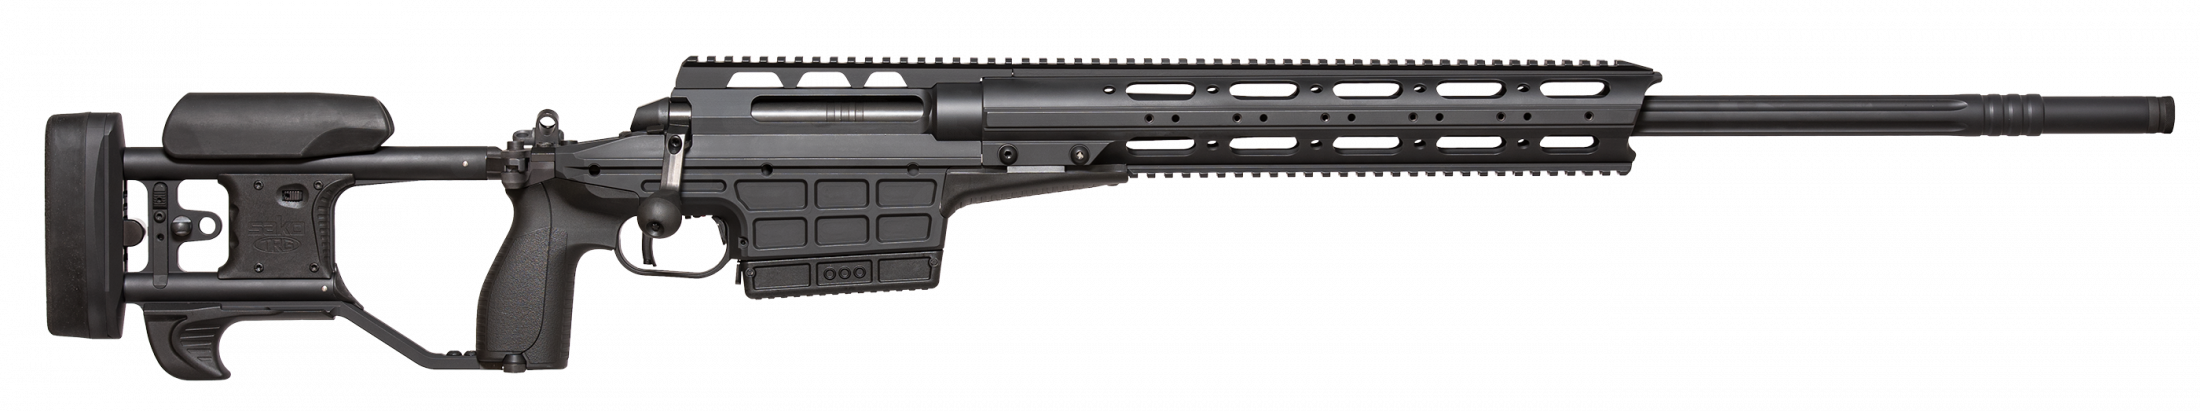 Sako TRG  M10  .338 Lapua Magnum                                                                              